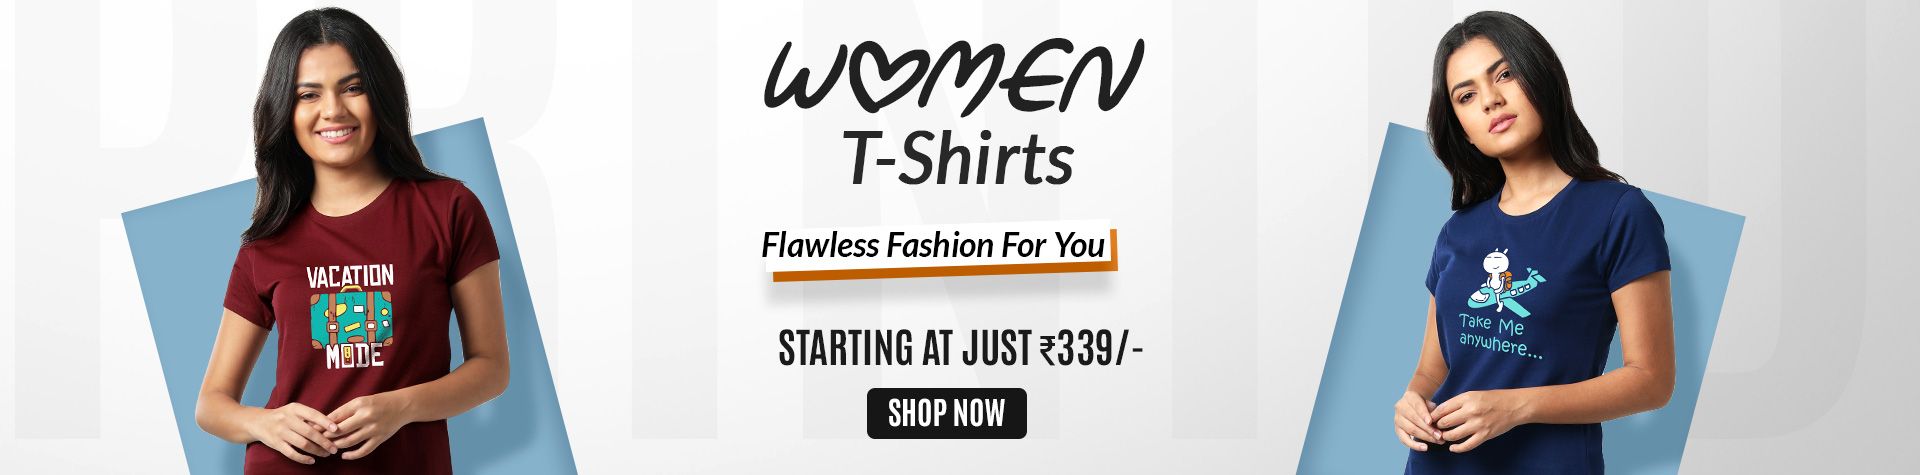 t shirt for women online